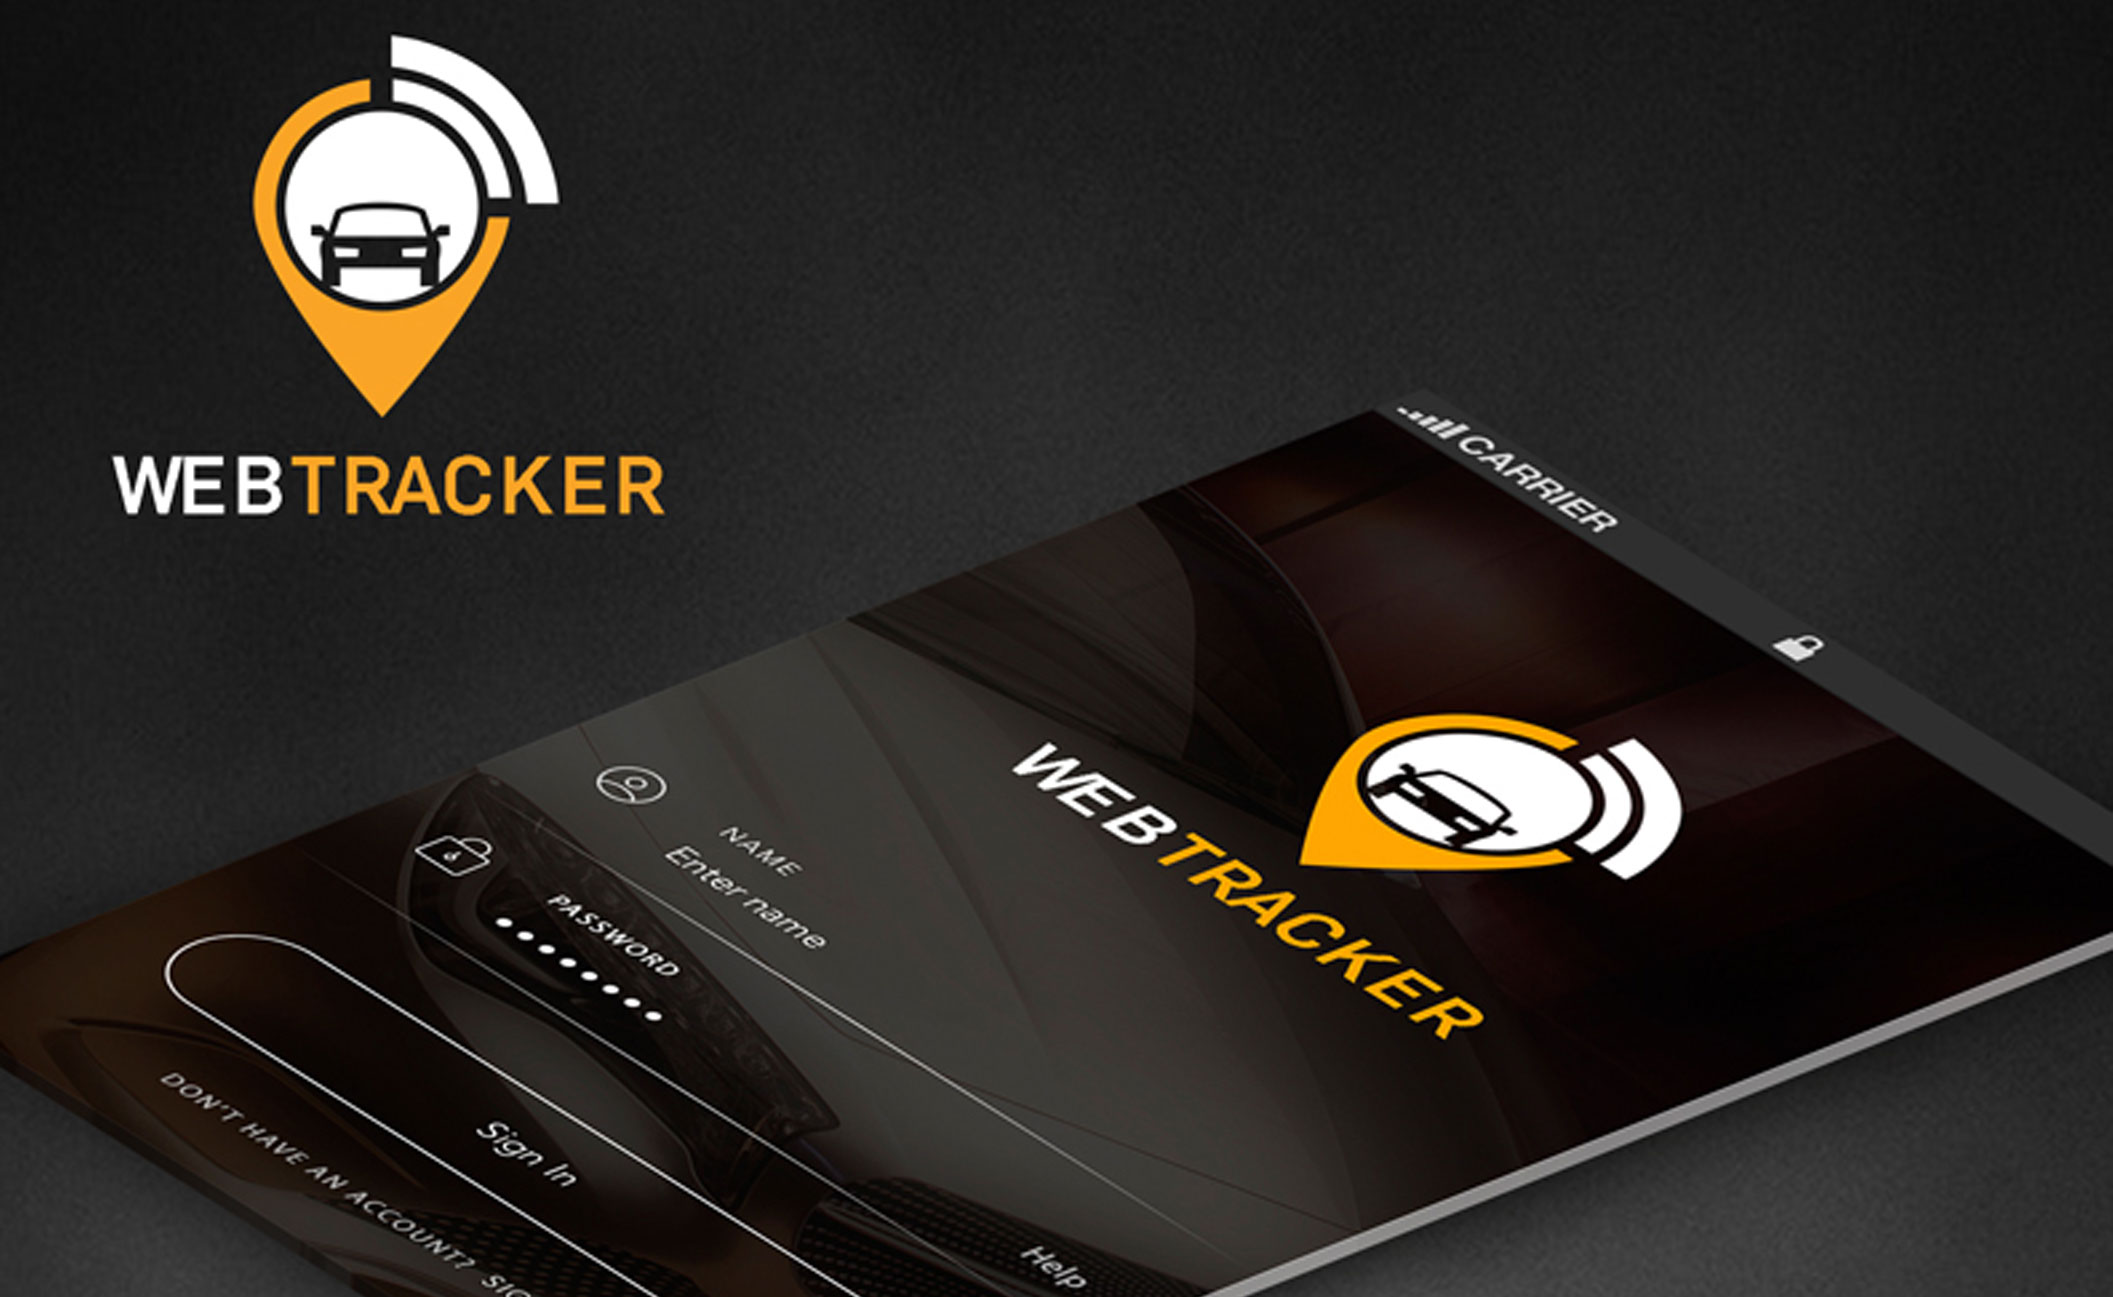 WebTracker Mobile App